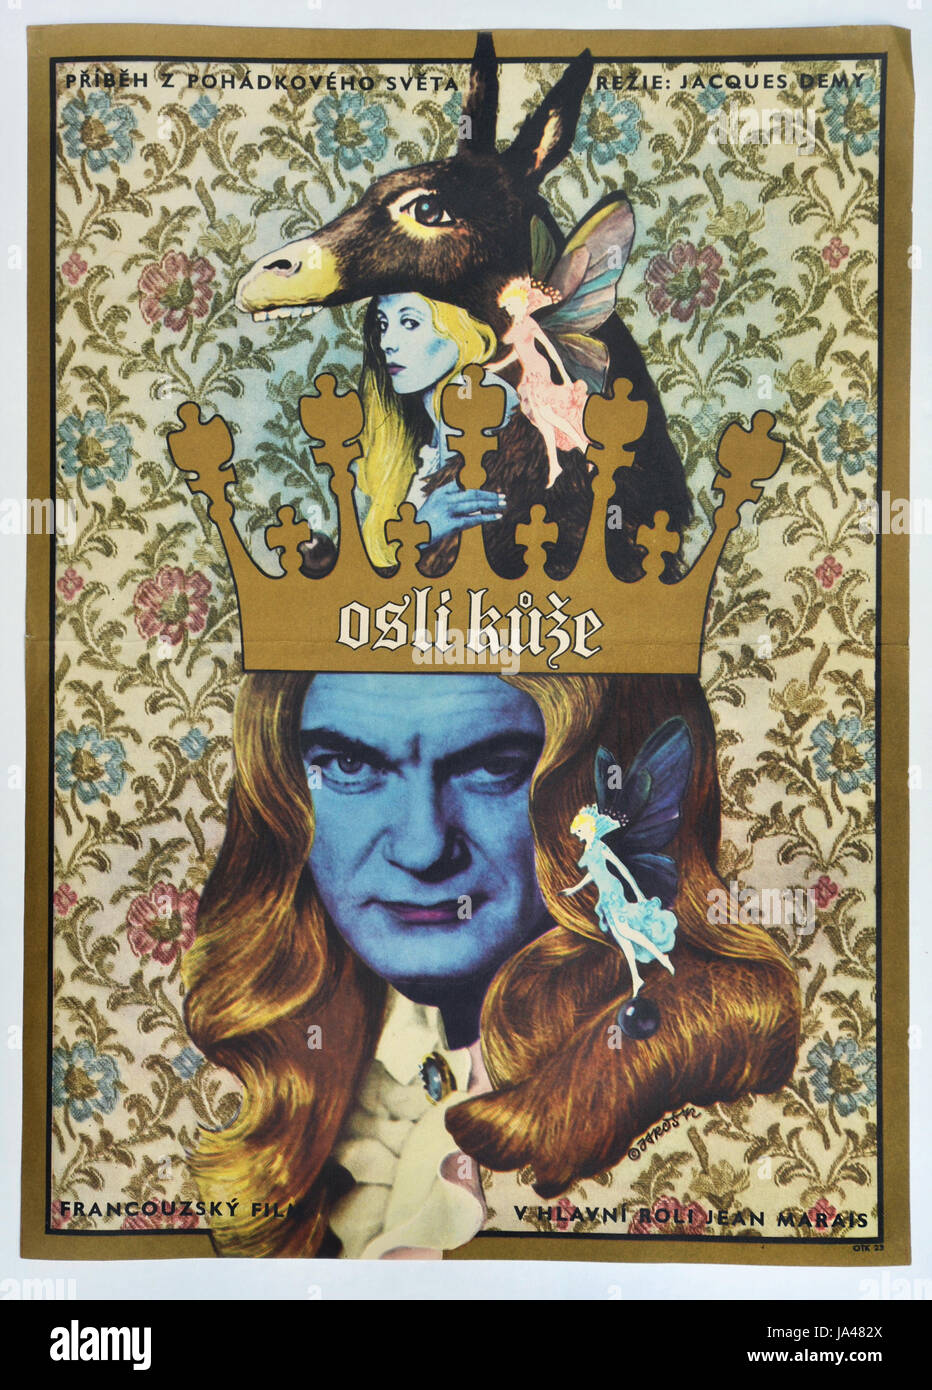 Esel-Haut. Tschechoslowakische Filmplakat für französische Film mit Jean Marais und Catherine Deneuve, 1970. Stockfoto